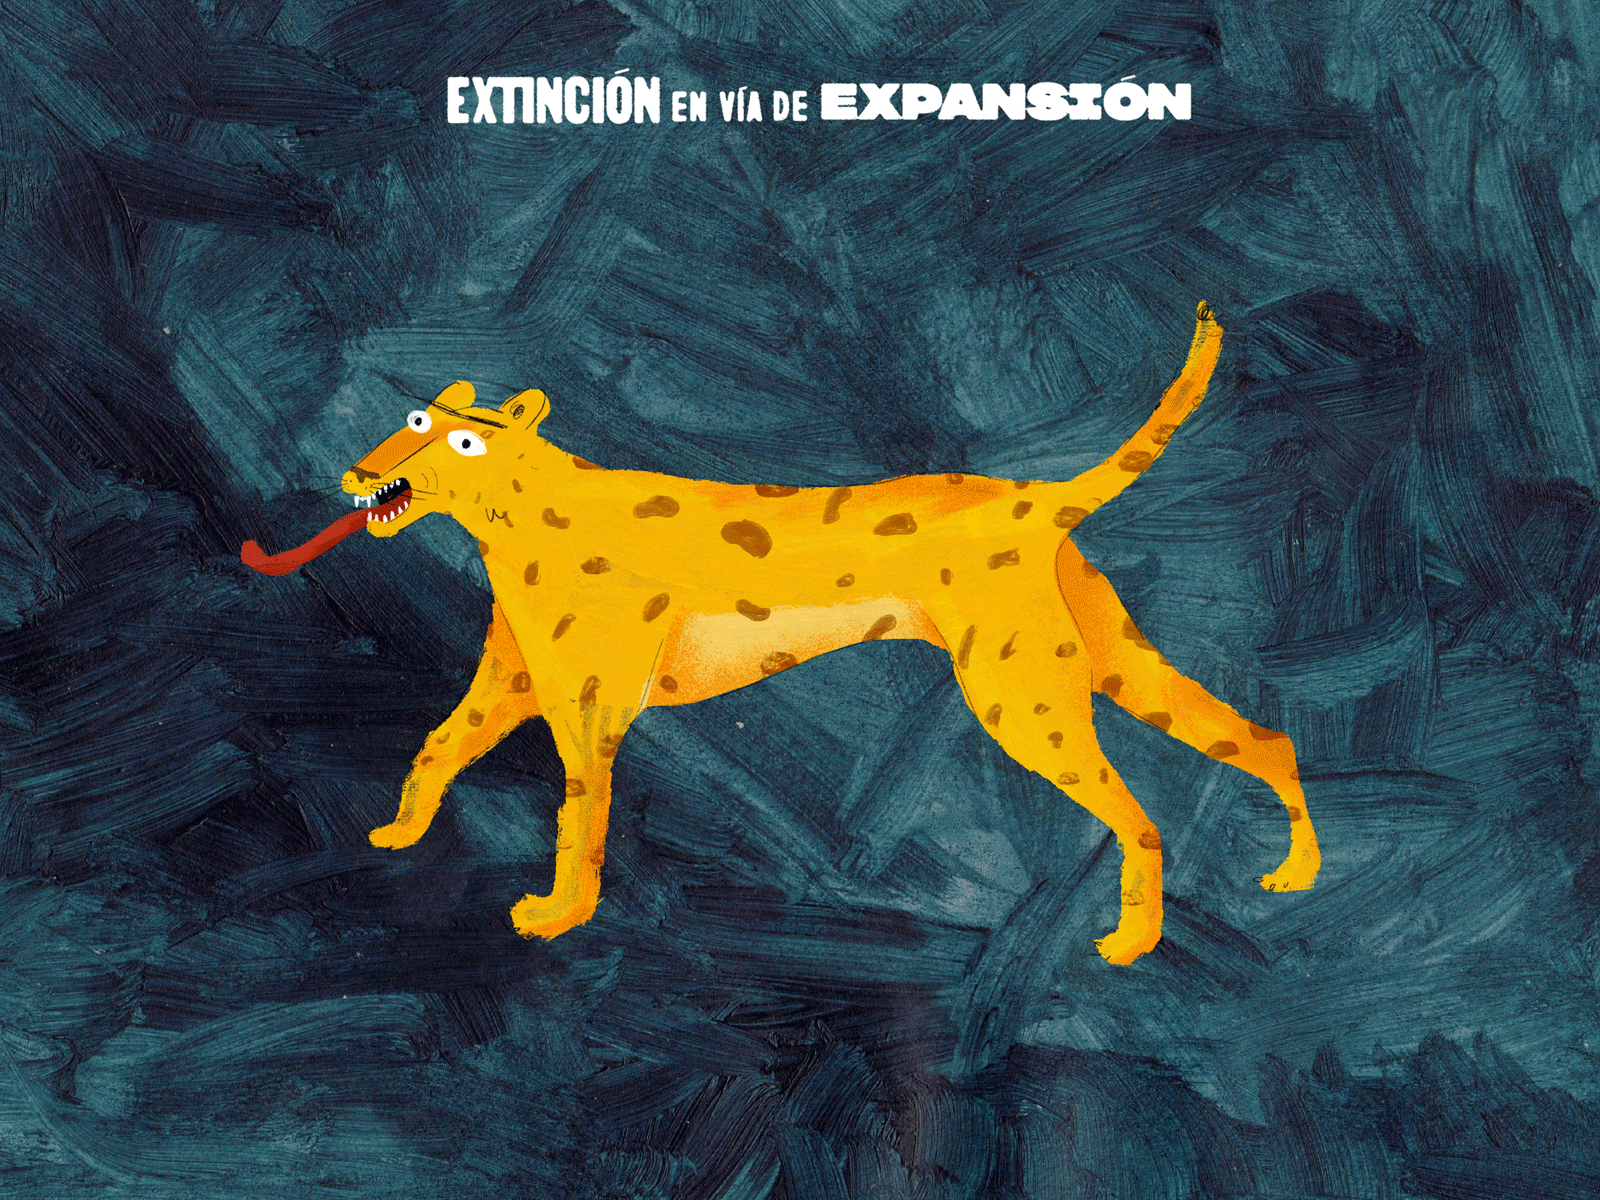 Jaguar - Extinción en vía de expansión animal animal illustration animated gif animation explosion illustration jaguars